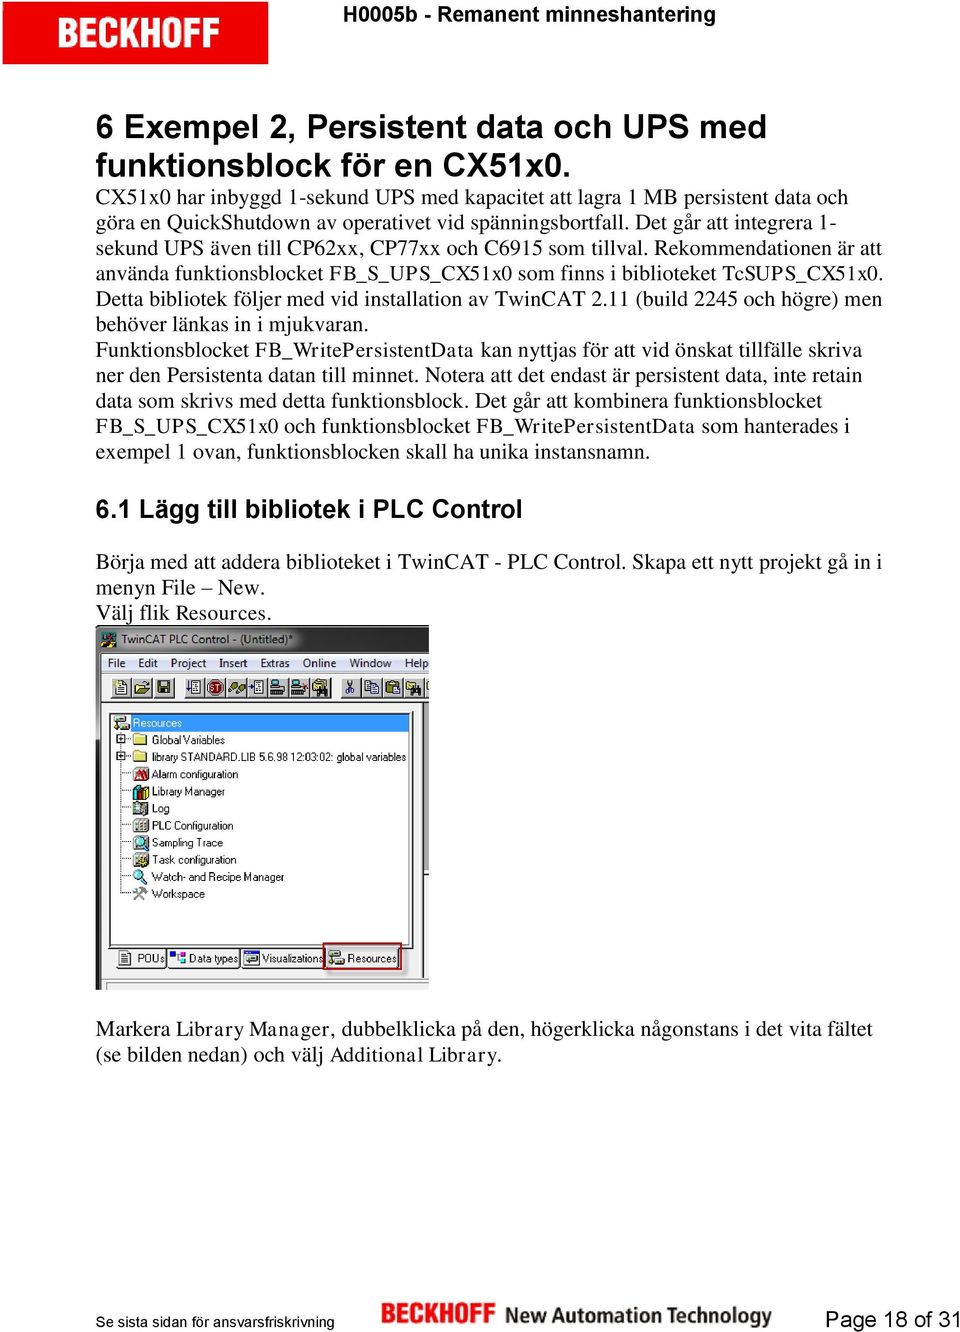 Det går att integrera 1- sekund UPS även till CP62xx, CP77xx och C6915 som tillval. Rekommendationen är att använda funktionsblocket FB_S_UPS_CX51x0 som finns i biblioteket TcSUPS_CX51x0.